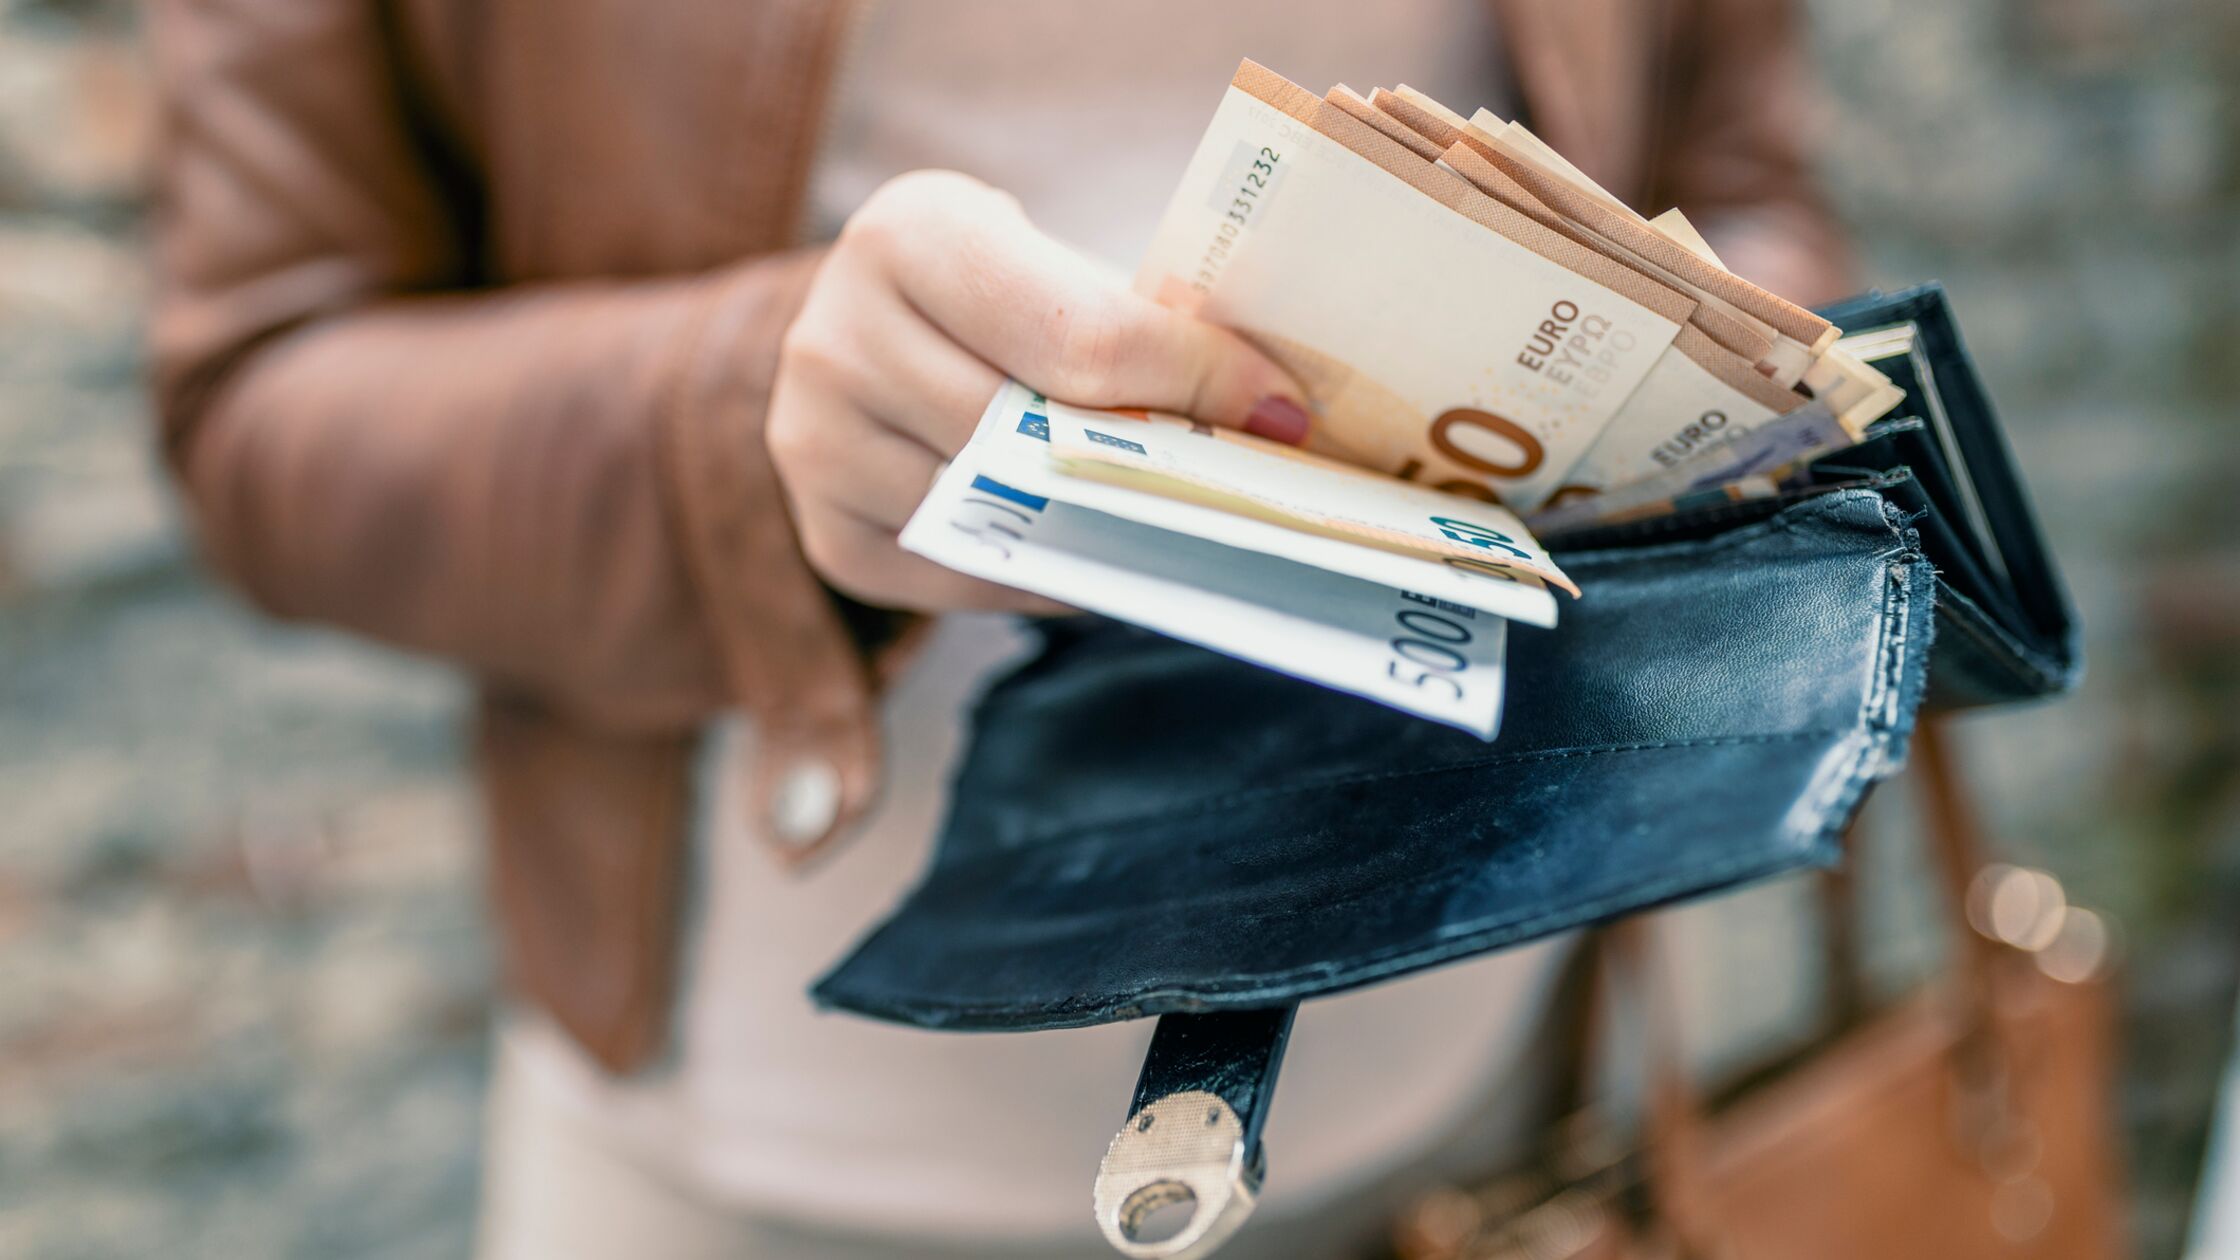 Frauenhand nimmt ein Bündel Geldscheine aus einem Geldbeutel